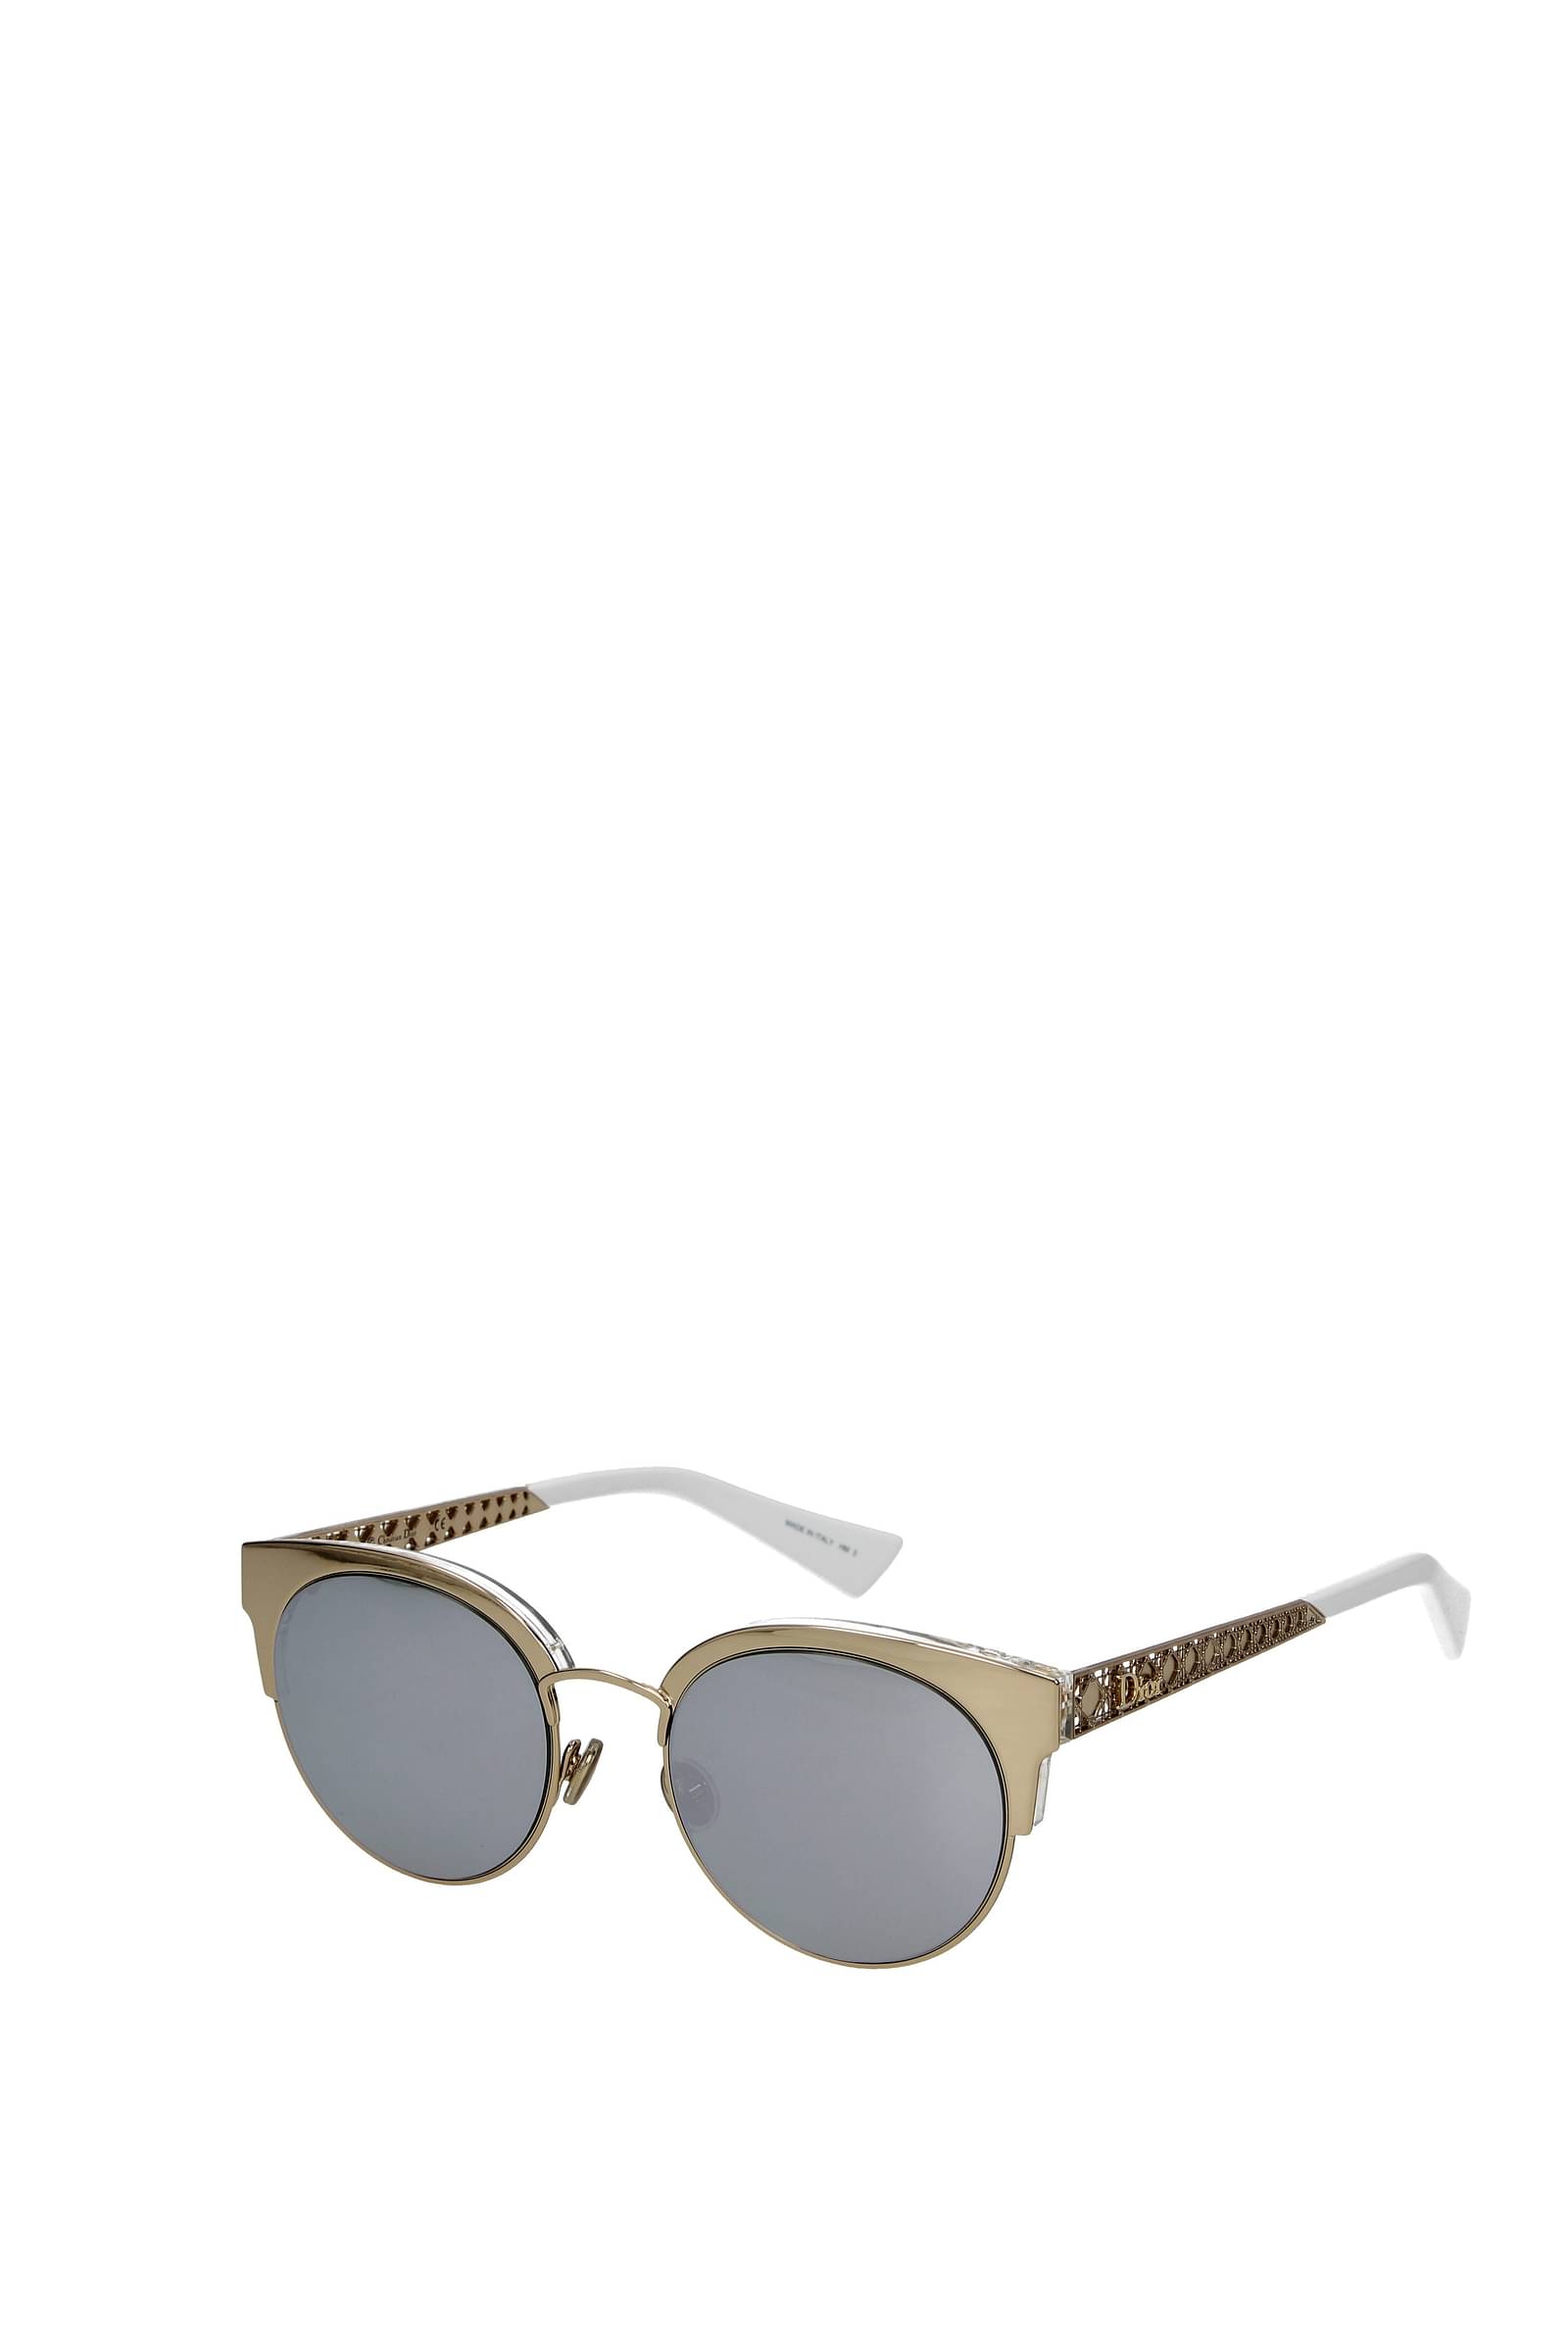 Sunglasses DIOR Signature DIORSIGNATURE B7I 10A1 52-18 in stock | Price  330,75 € | Visiofactory